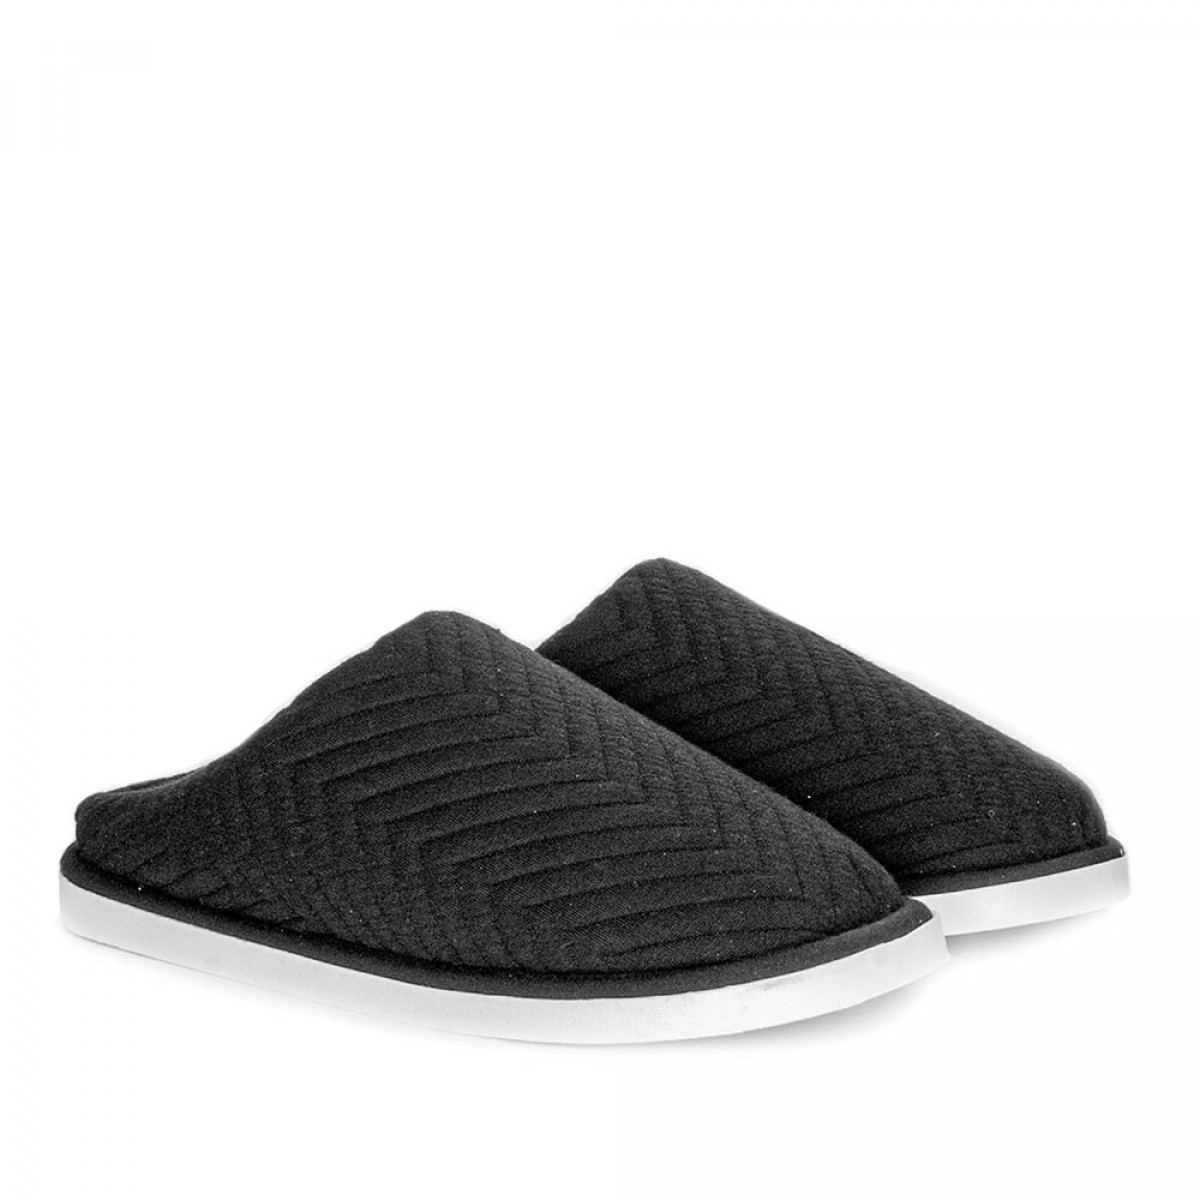 Men's Home slippers FAMILY, Black